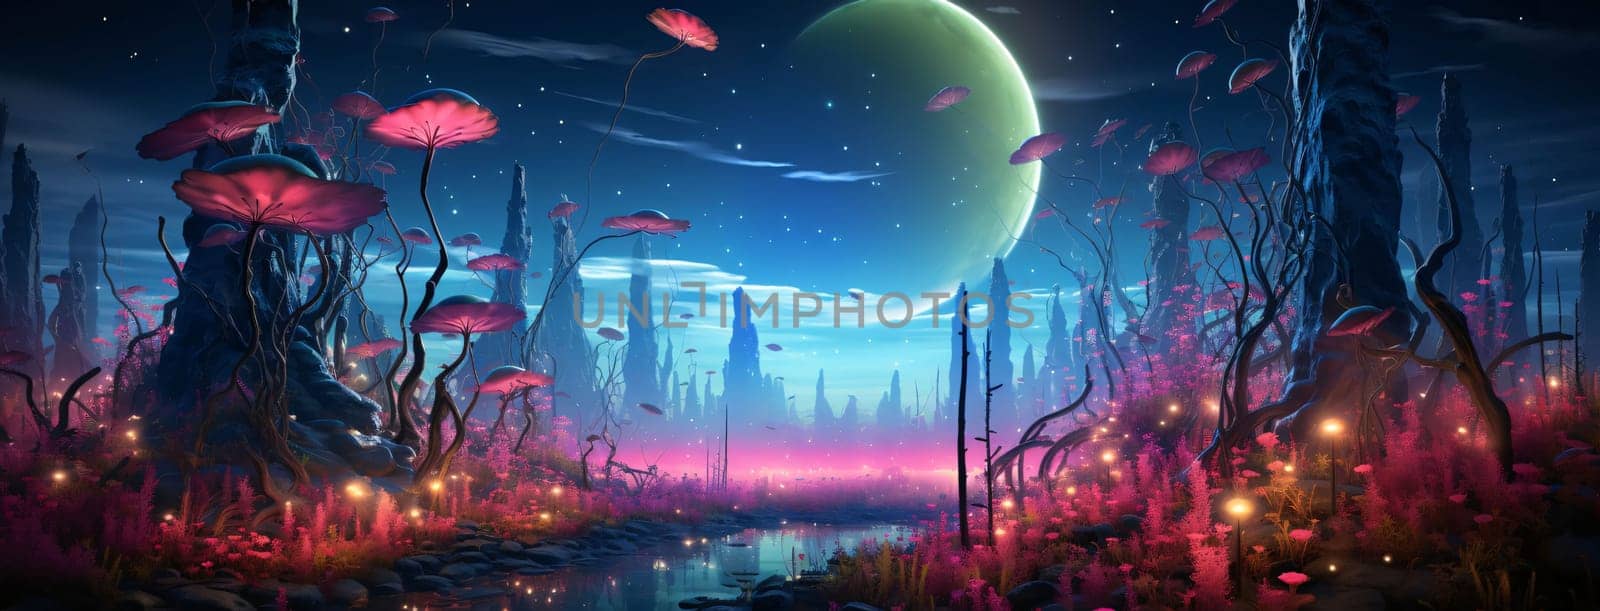 Banner: Fantasy landscape with a fantastic alien planet. 3D illustration.